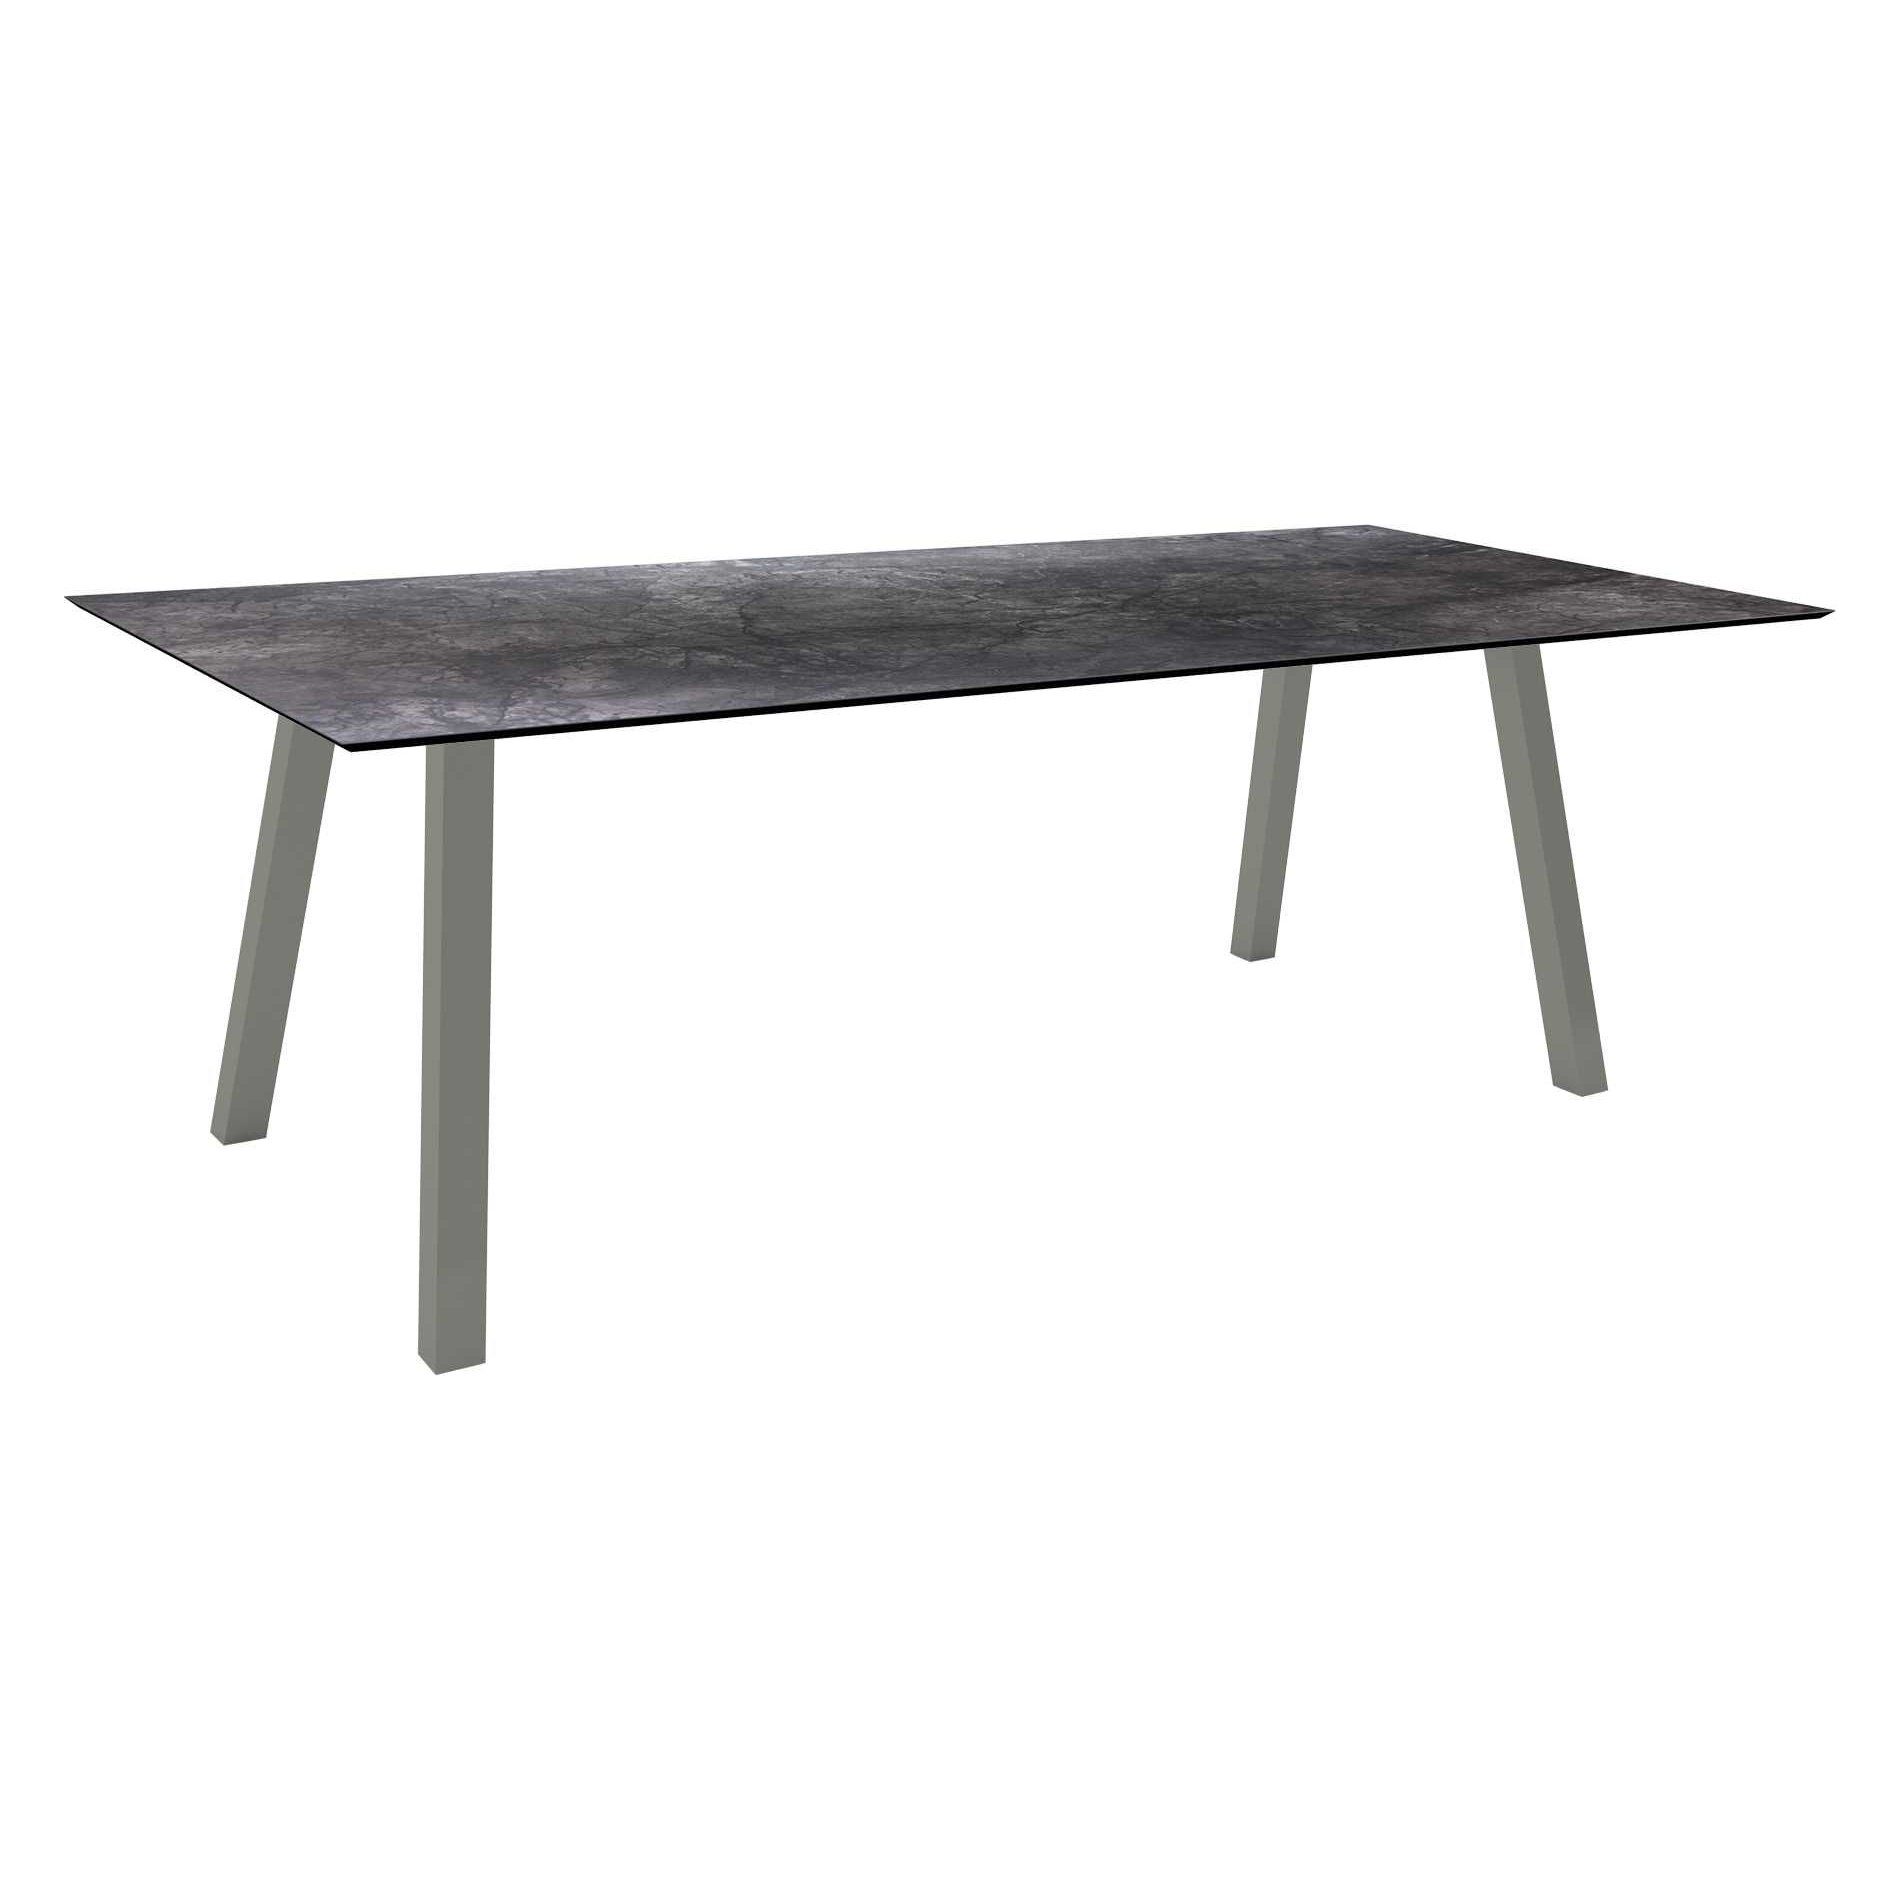 Stern Tisch "Interno", Größe 220x100cm, Alu graphit, Vierkantrohr, Tischplatte HPL Dark Marble